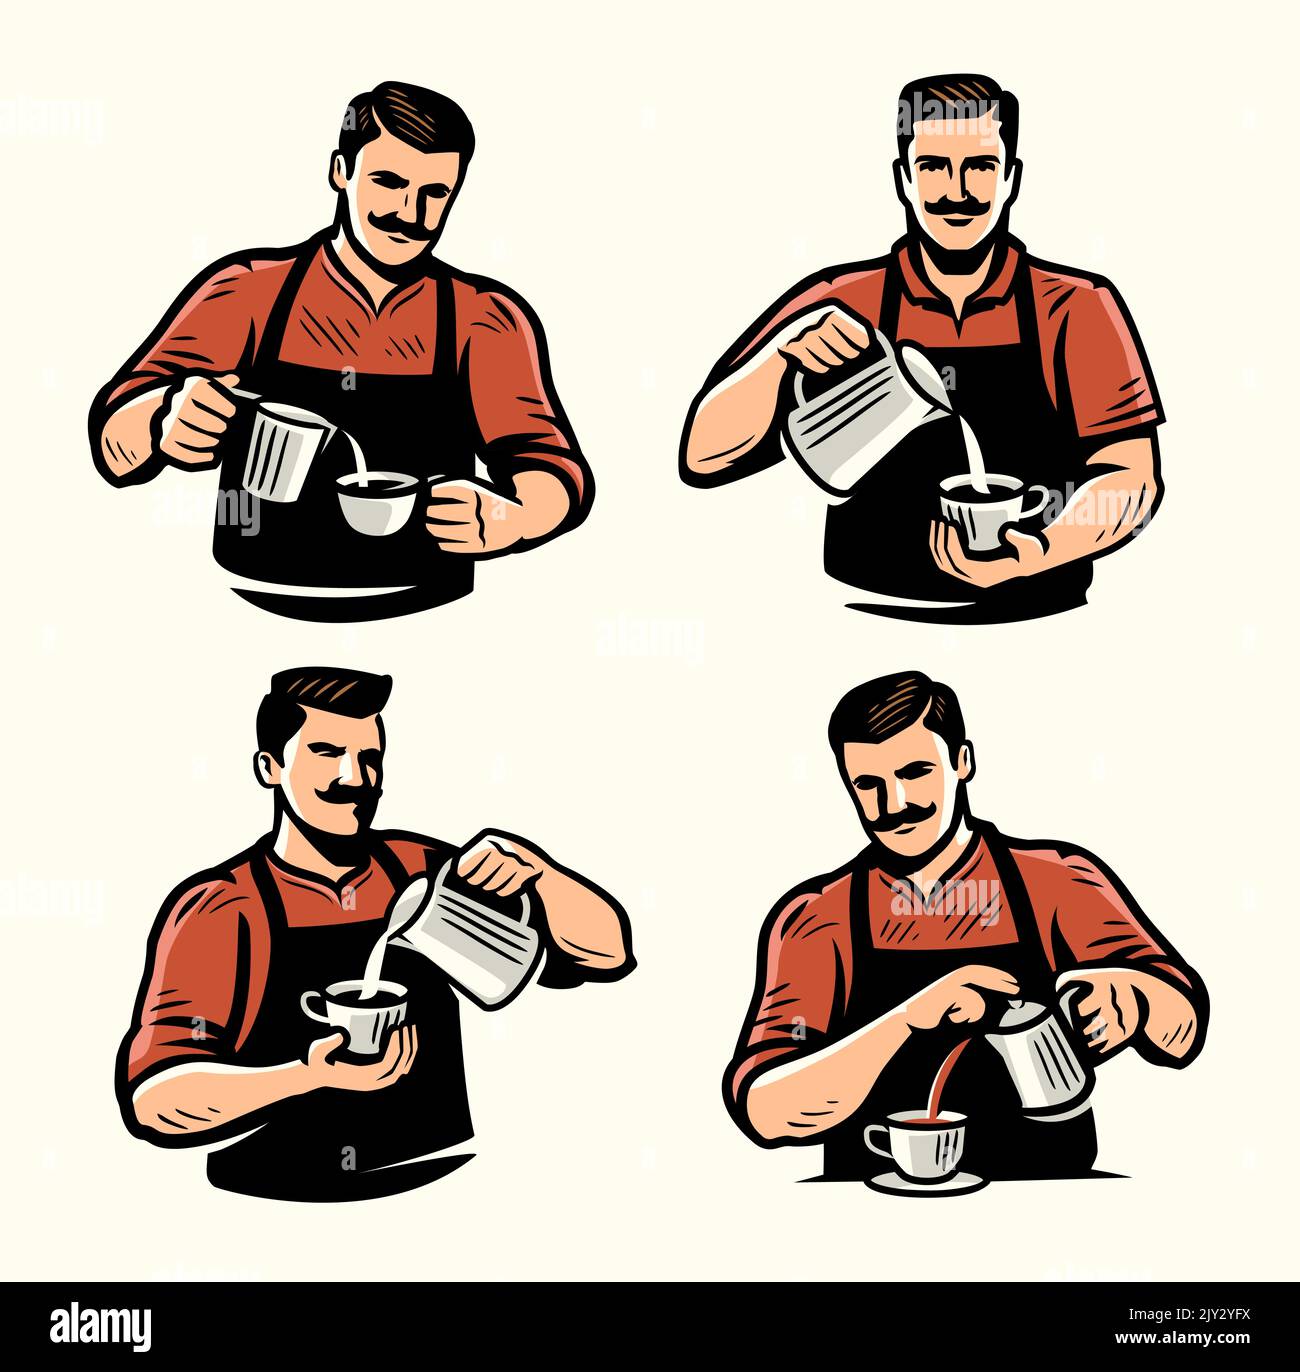 El barista vierte la nata en una taza de café. Diseñado para el menú de restaurante o cafetería. Haciendo ilustración de vector de bebida de café artesanal Ilustración del Vector